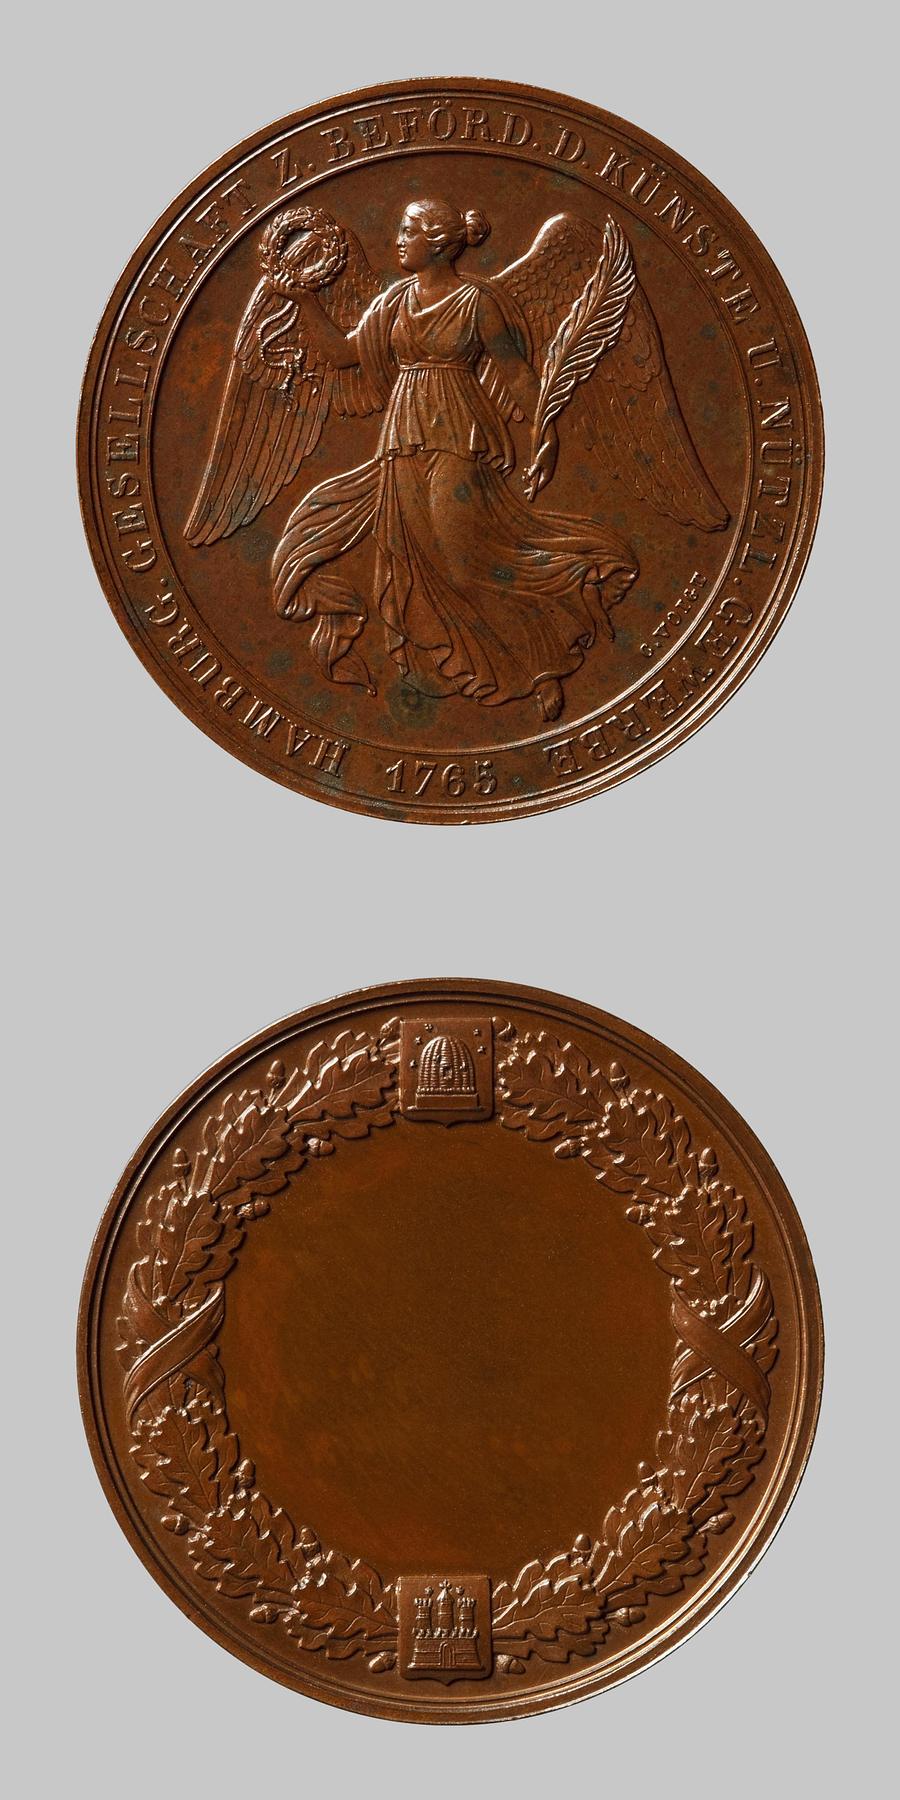 Medaljens forside: Victoria svævende med palmegren og krans. Medaljens bagside: Egekrans, skjold med en bikube og Hamborgs byvåben, F130